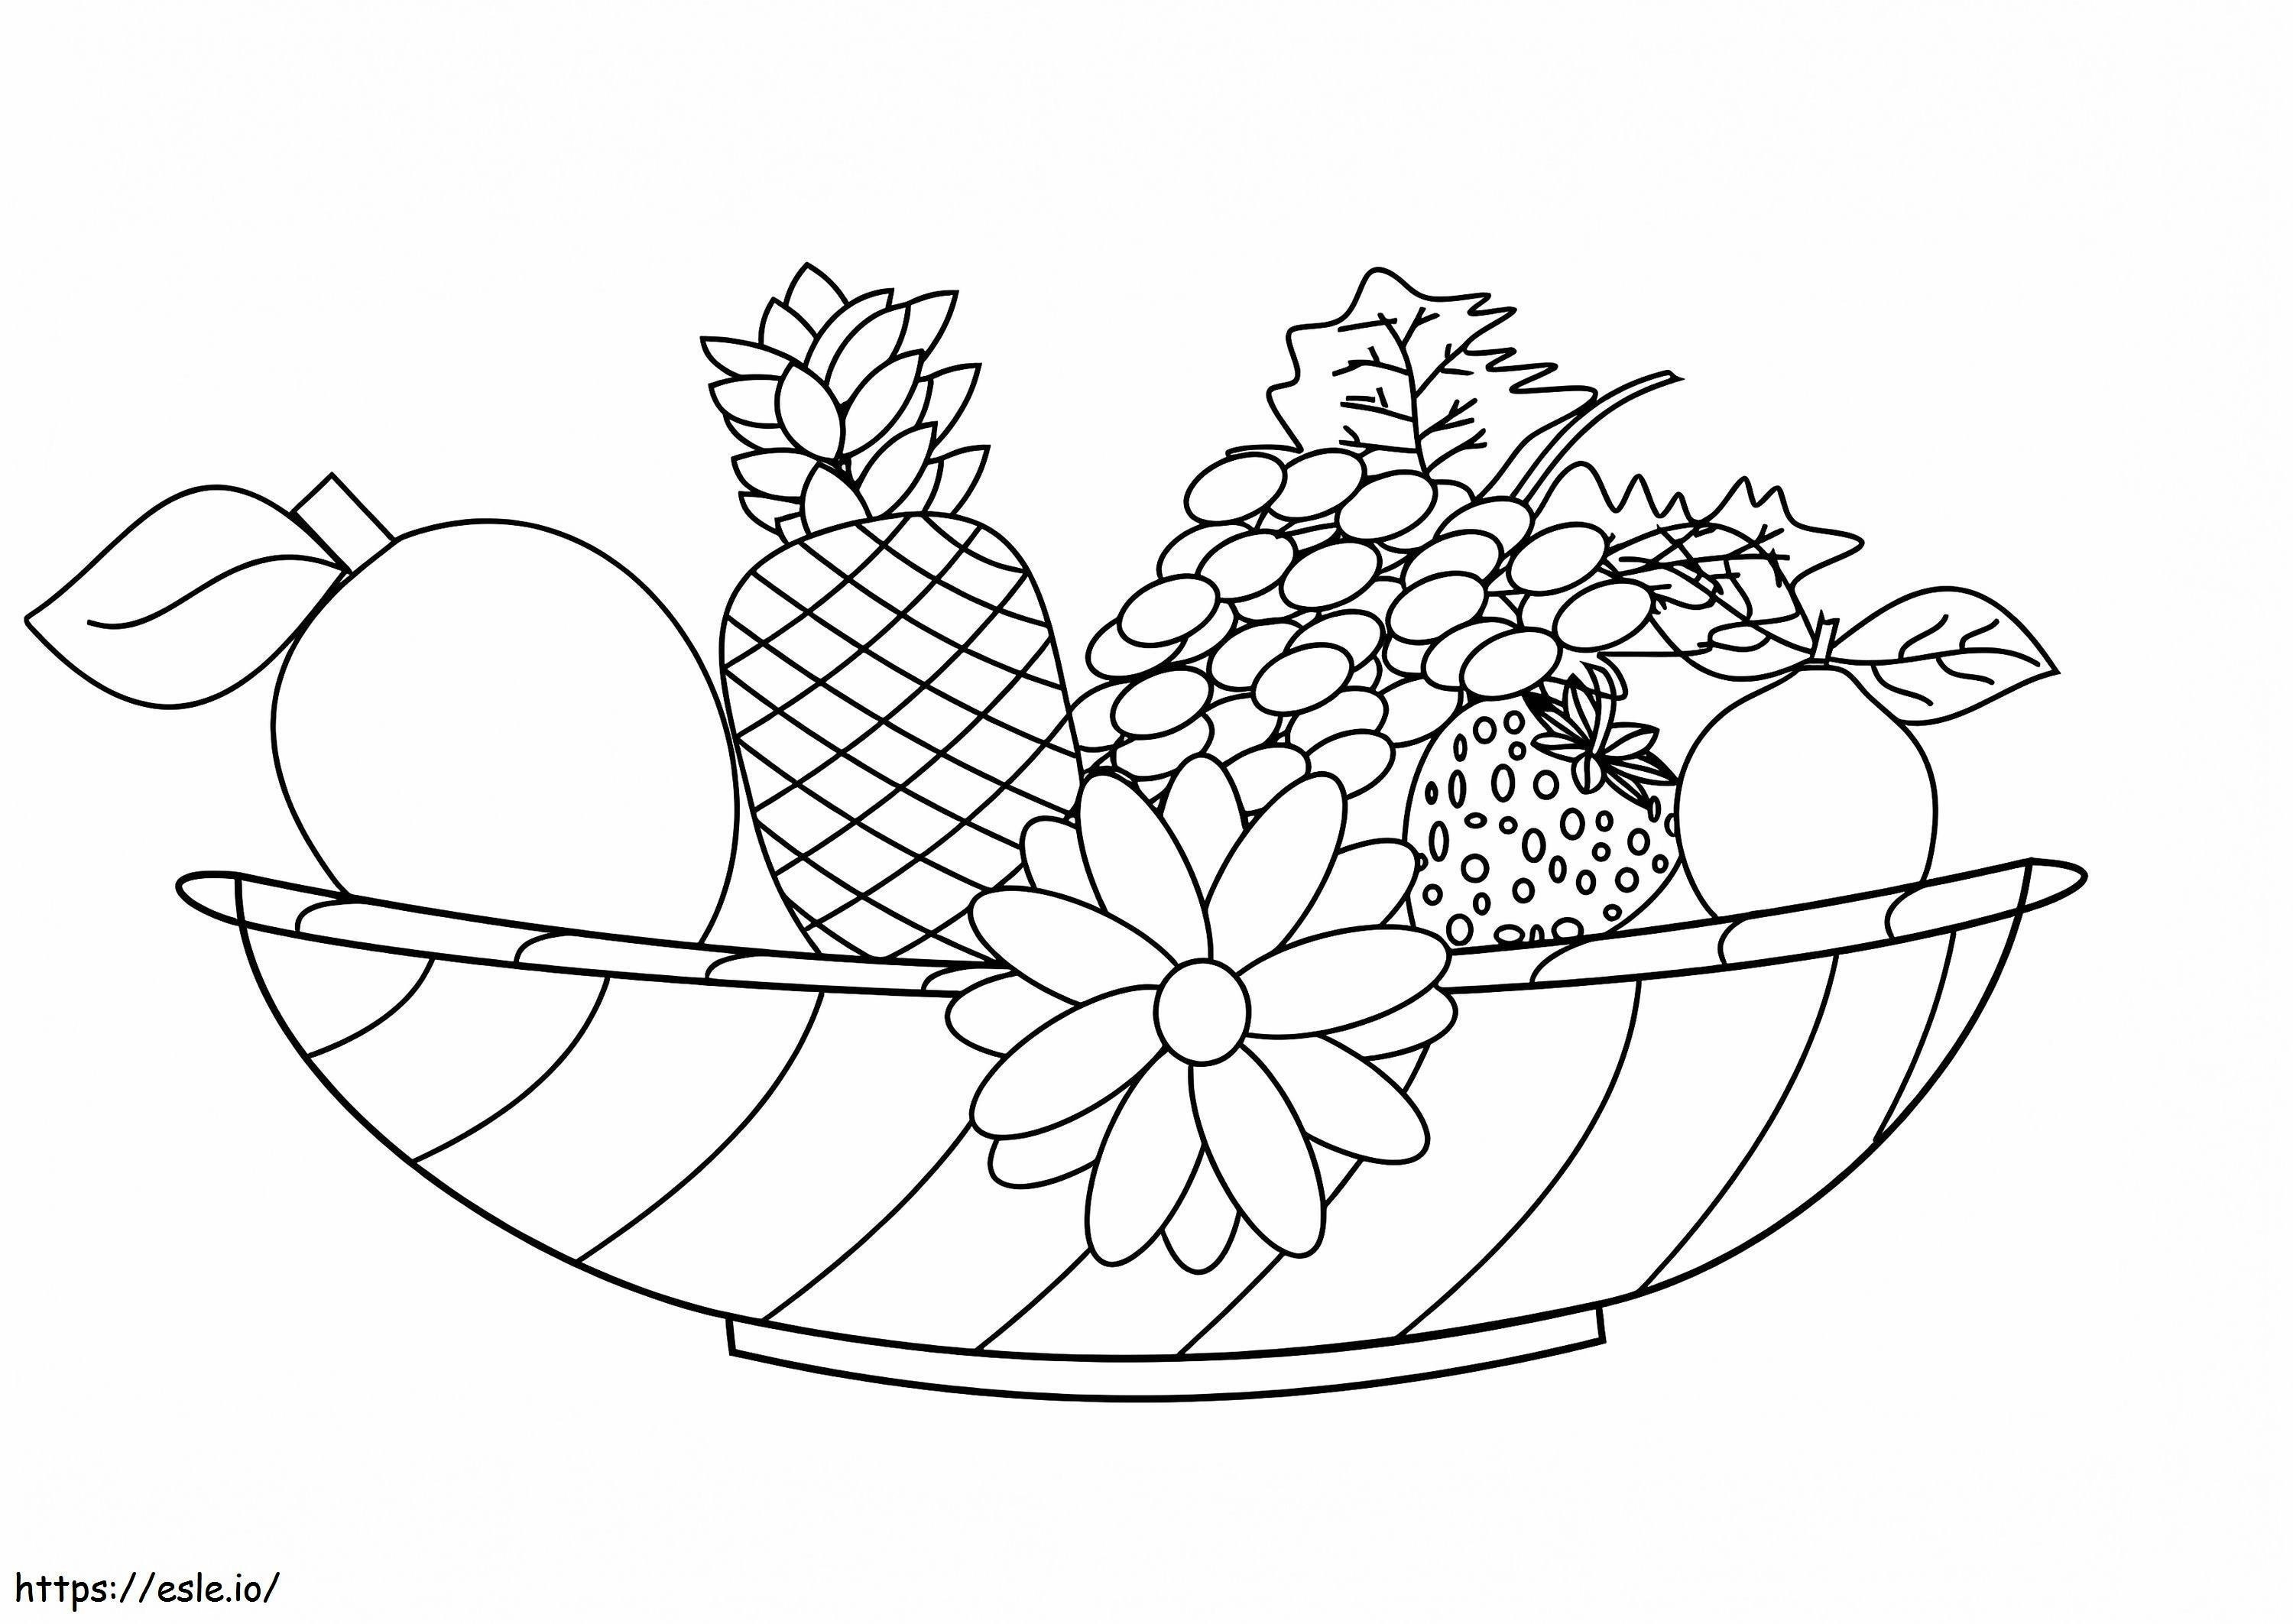 Früchte und Blumen ausmalbilder